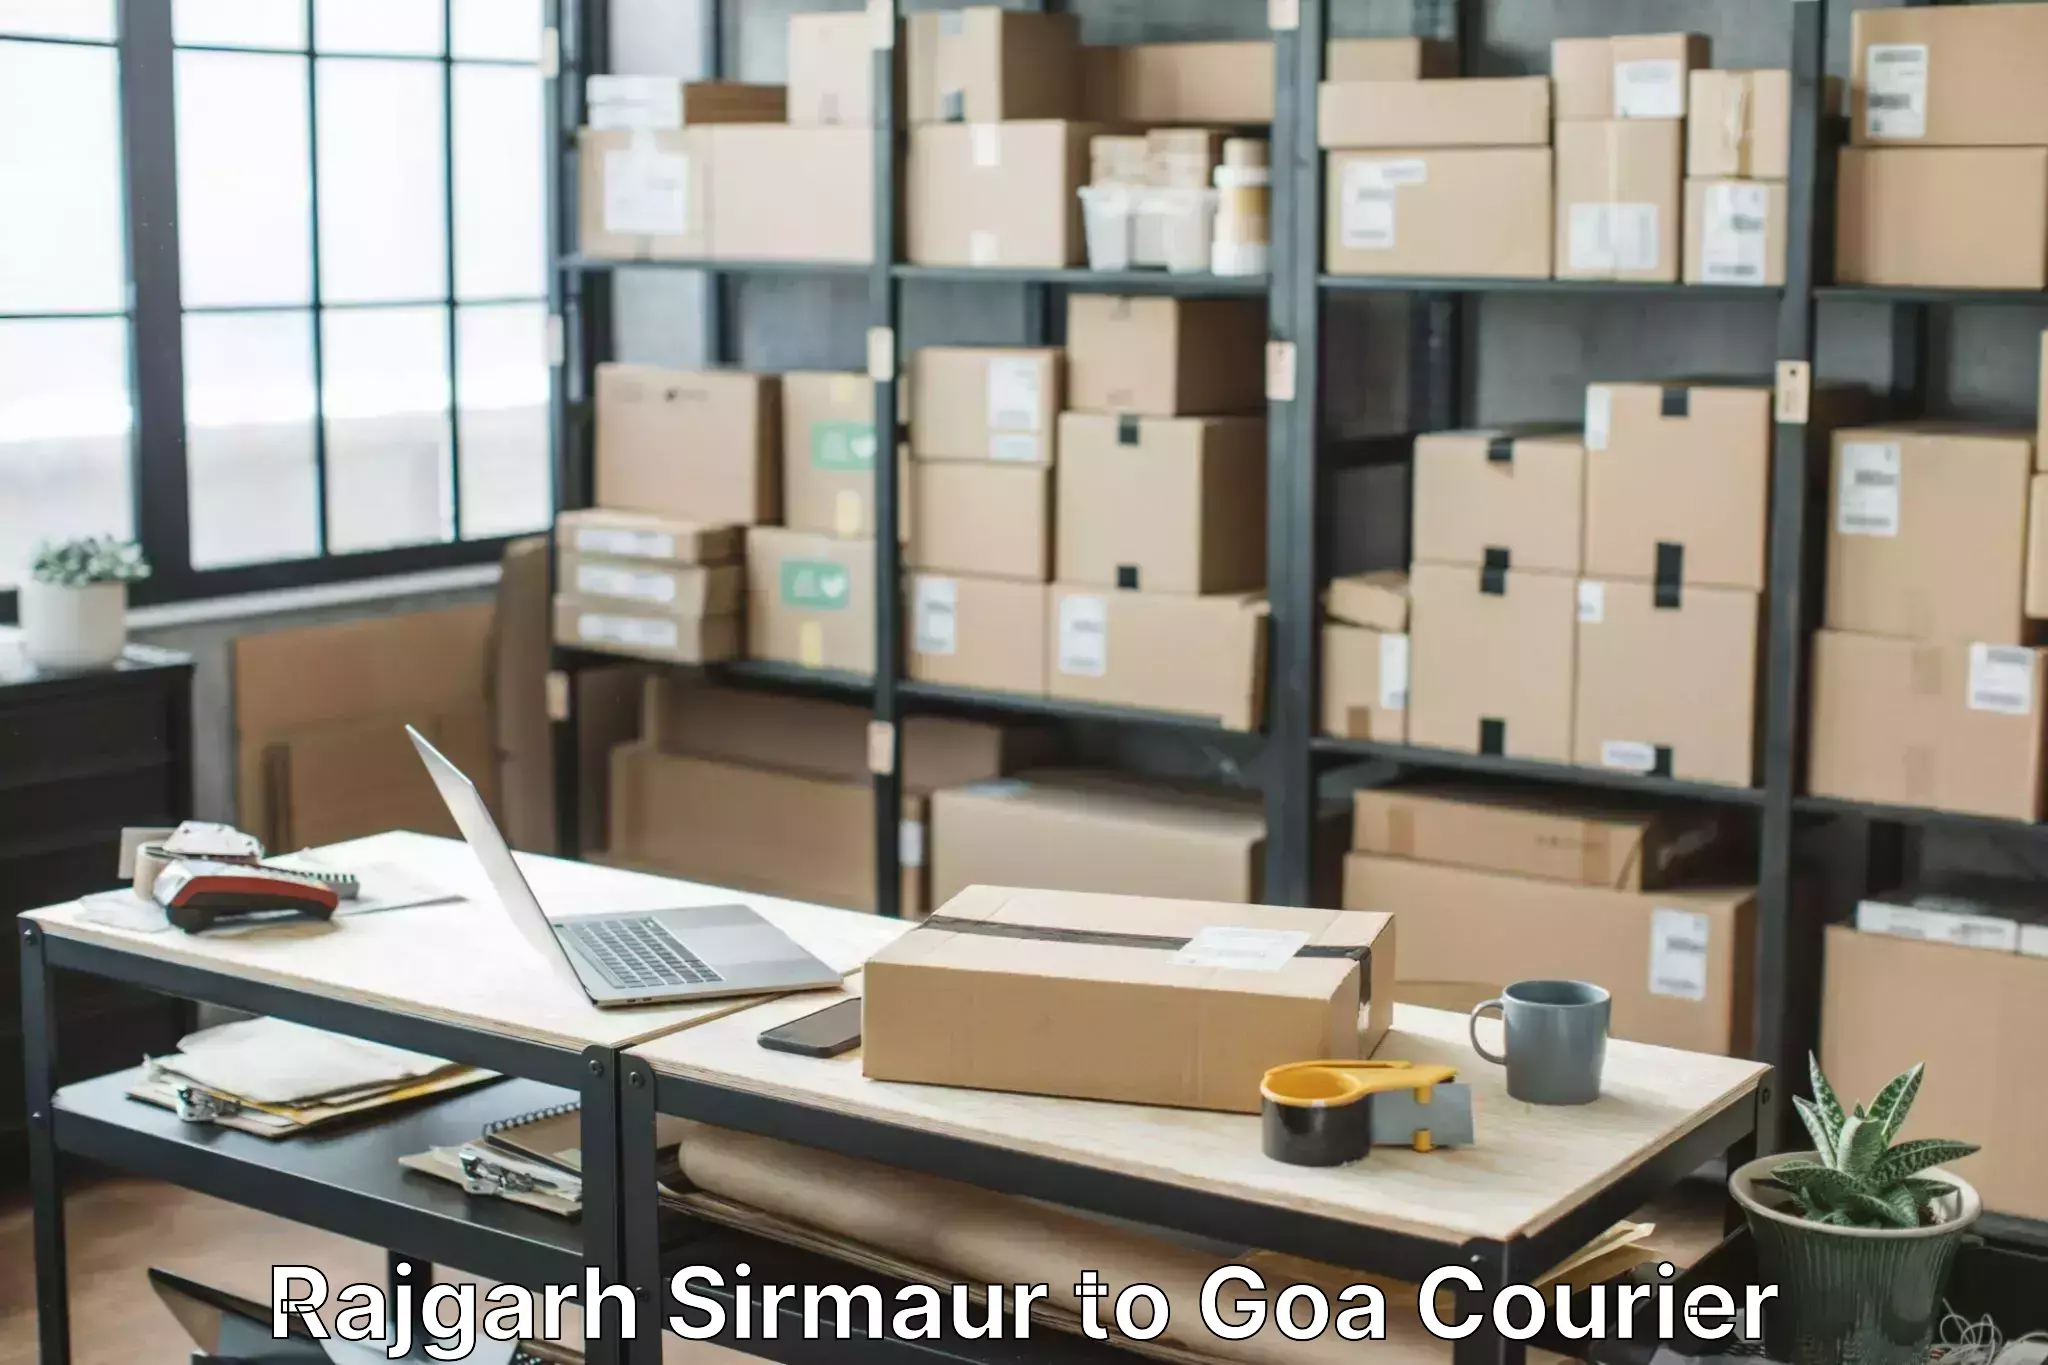 Furniture moving experts Rajgarh Sirmaur to Bardez